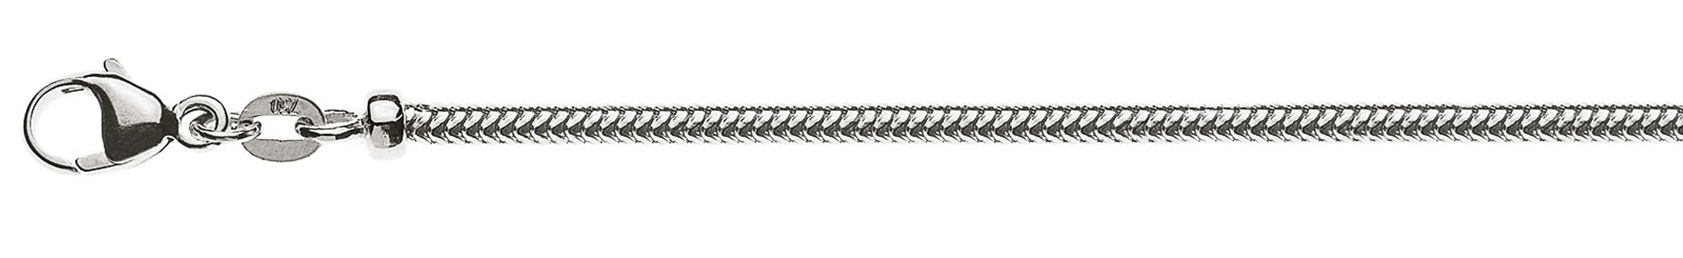 AURONOS Prestige Collier en or blanc 18K, chaîne serpent 40cm 2.4mm